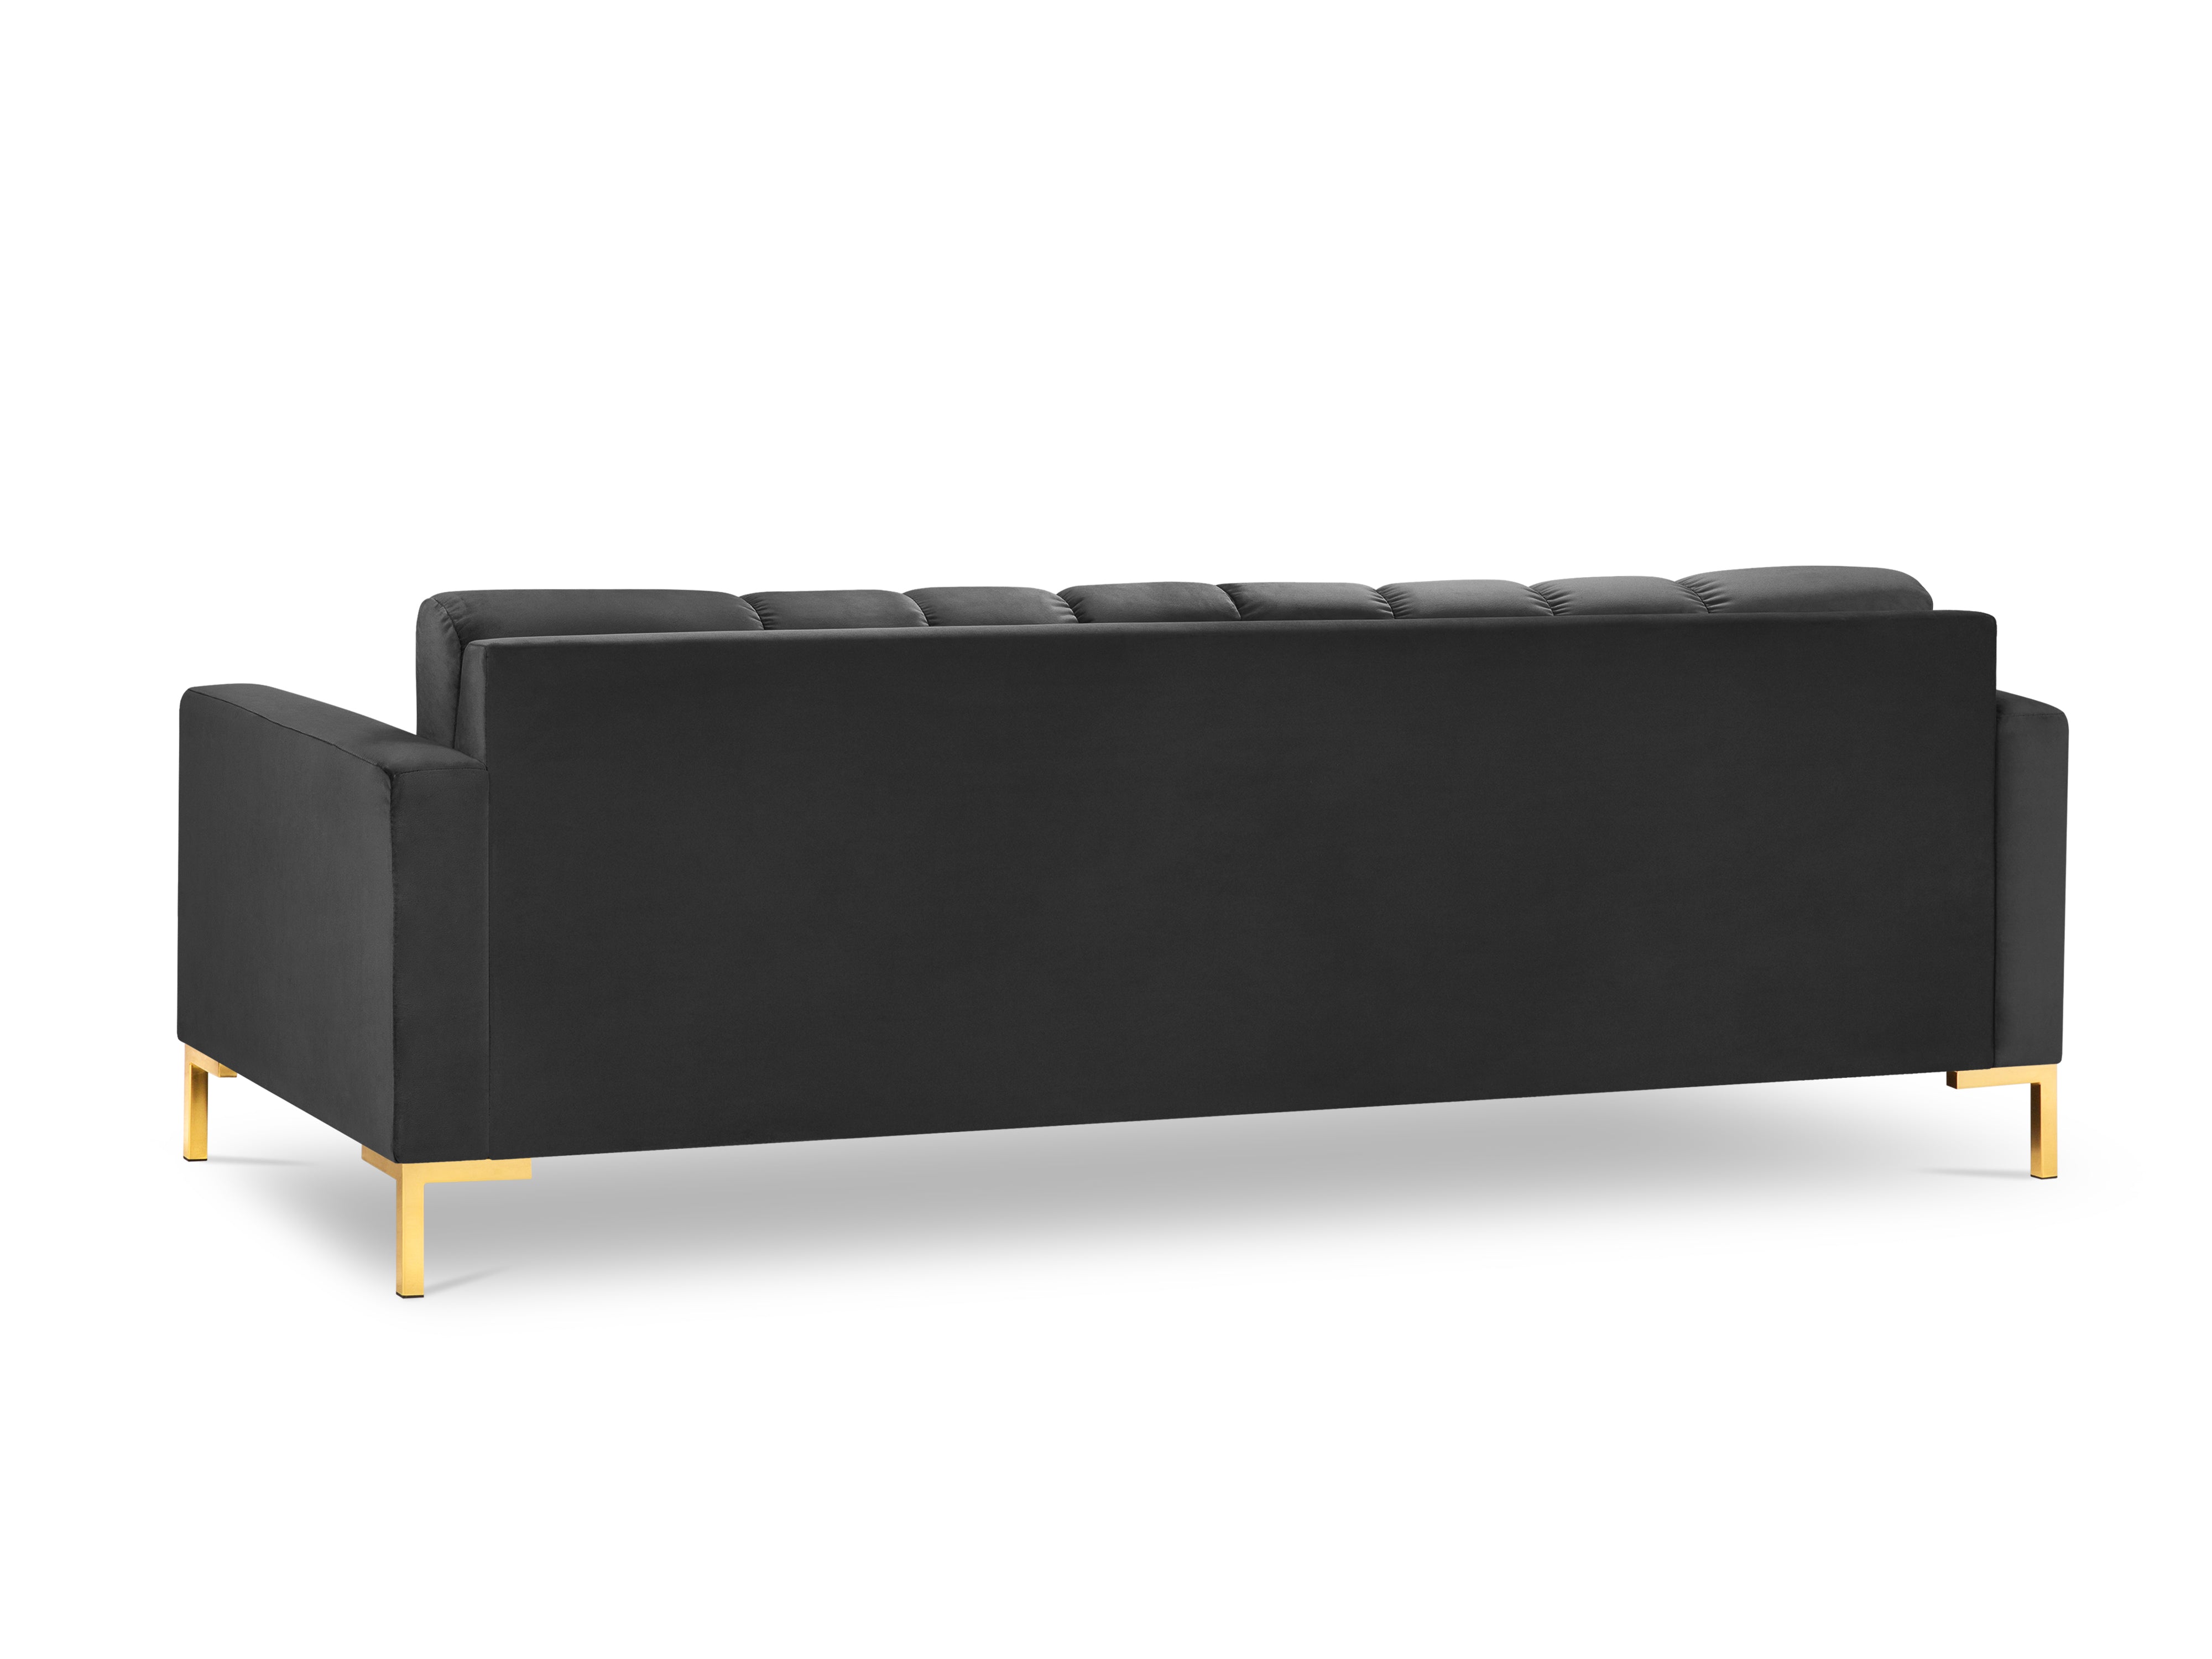 Dark gray sofa with a golden base